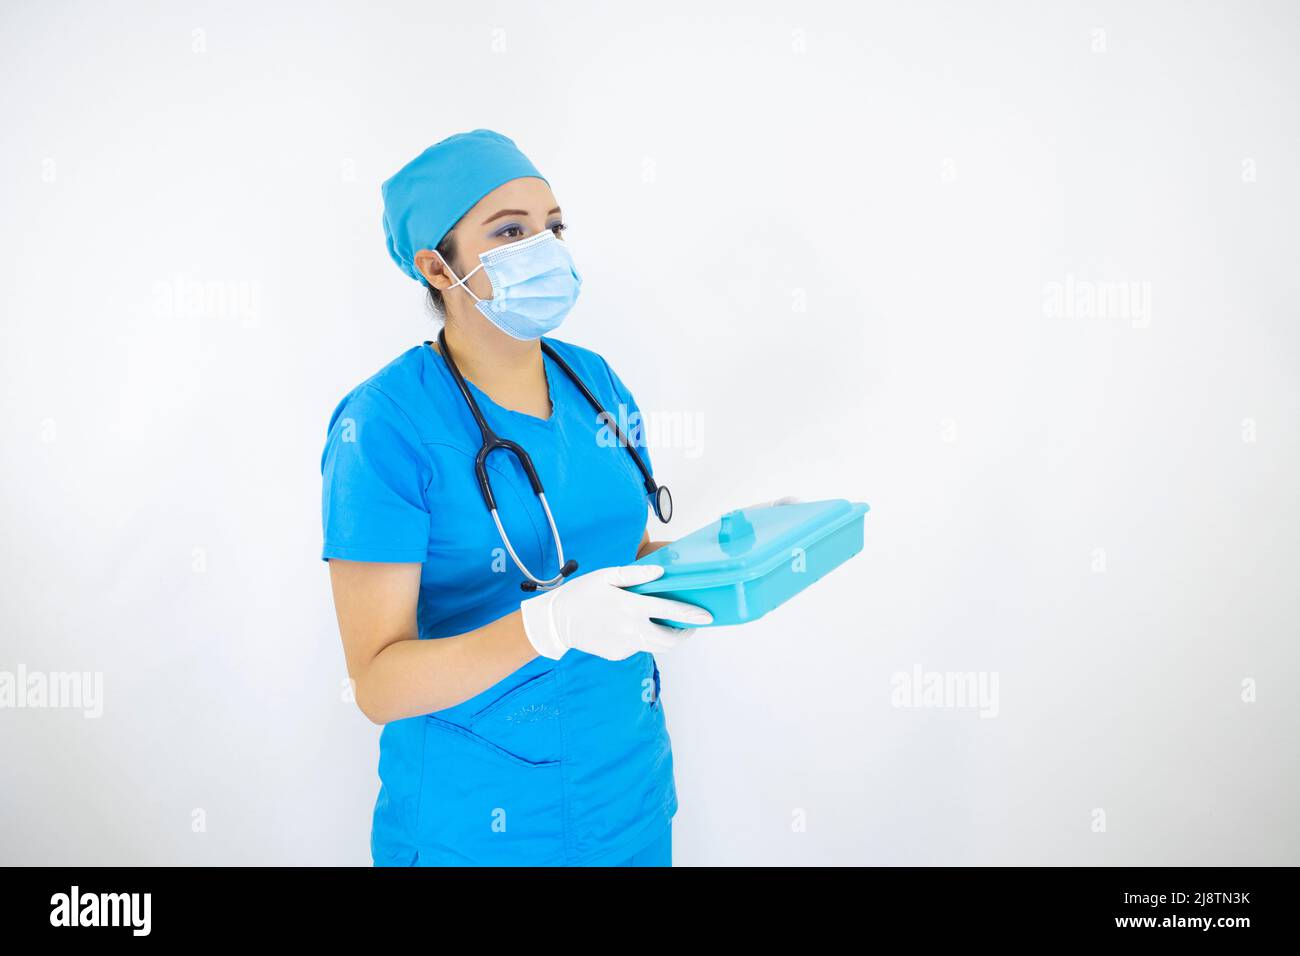 Schöne medizinische Frau trägt Gesichtsmaske, einheitliche und blaue OP-Kappe, Stethoskop und Latexhandschuhe, Vorbereitung Instrumente Fall auf weißem Hintergrund Stockfoto